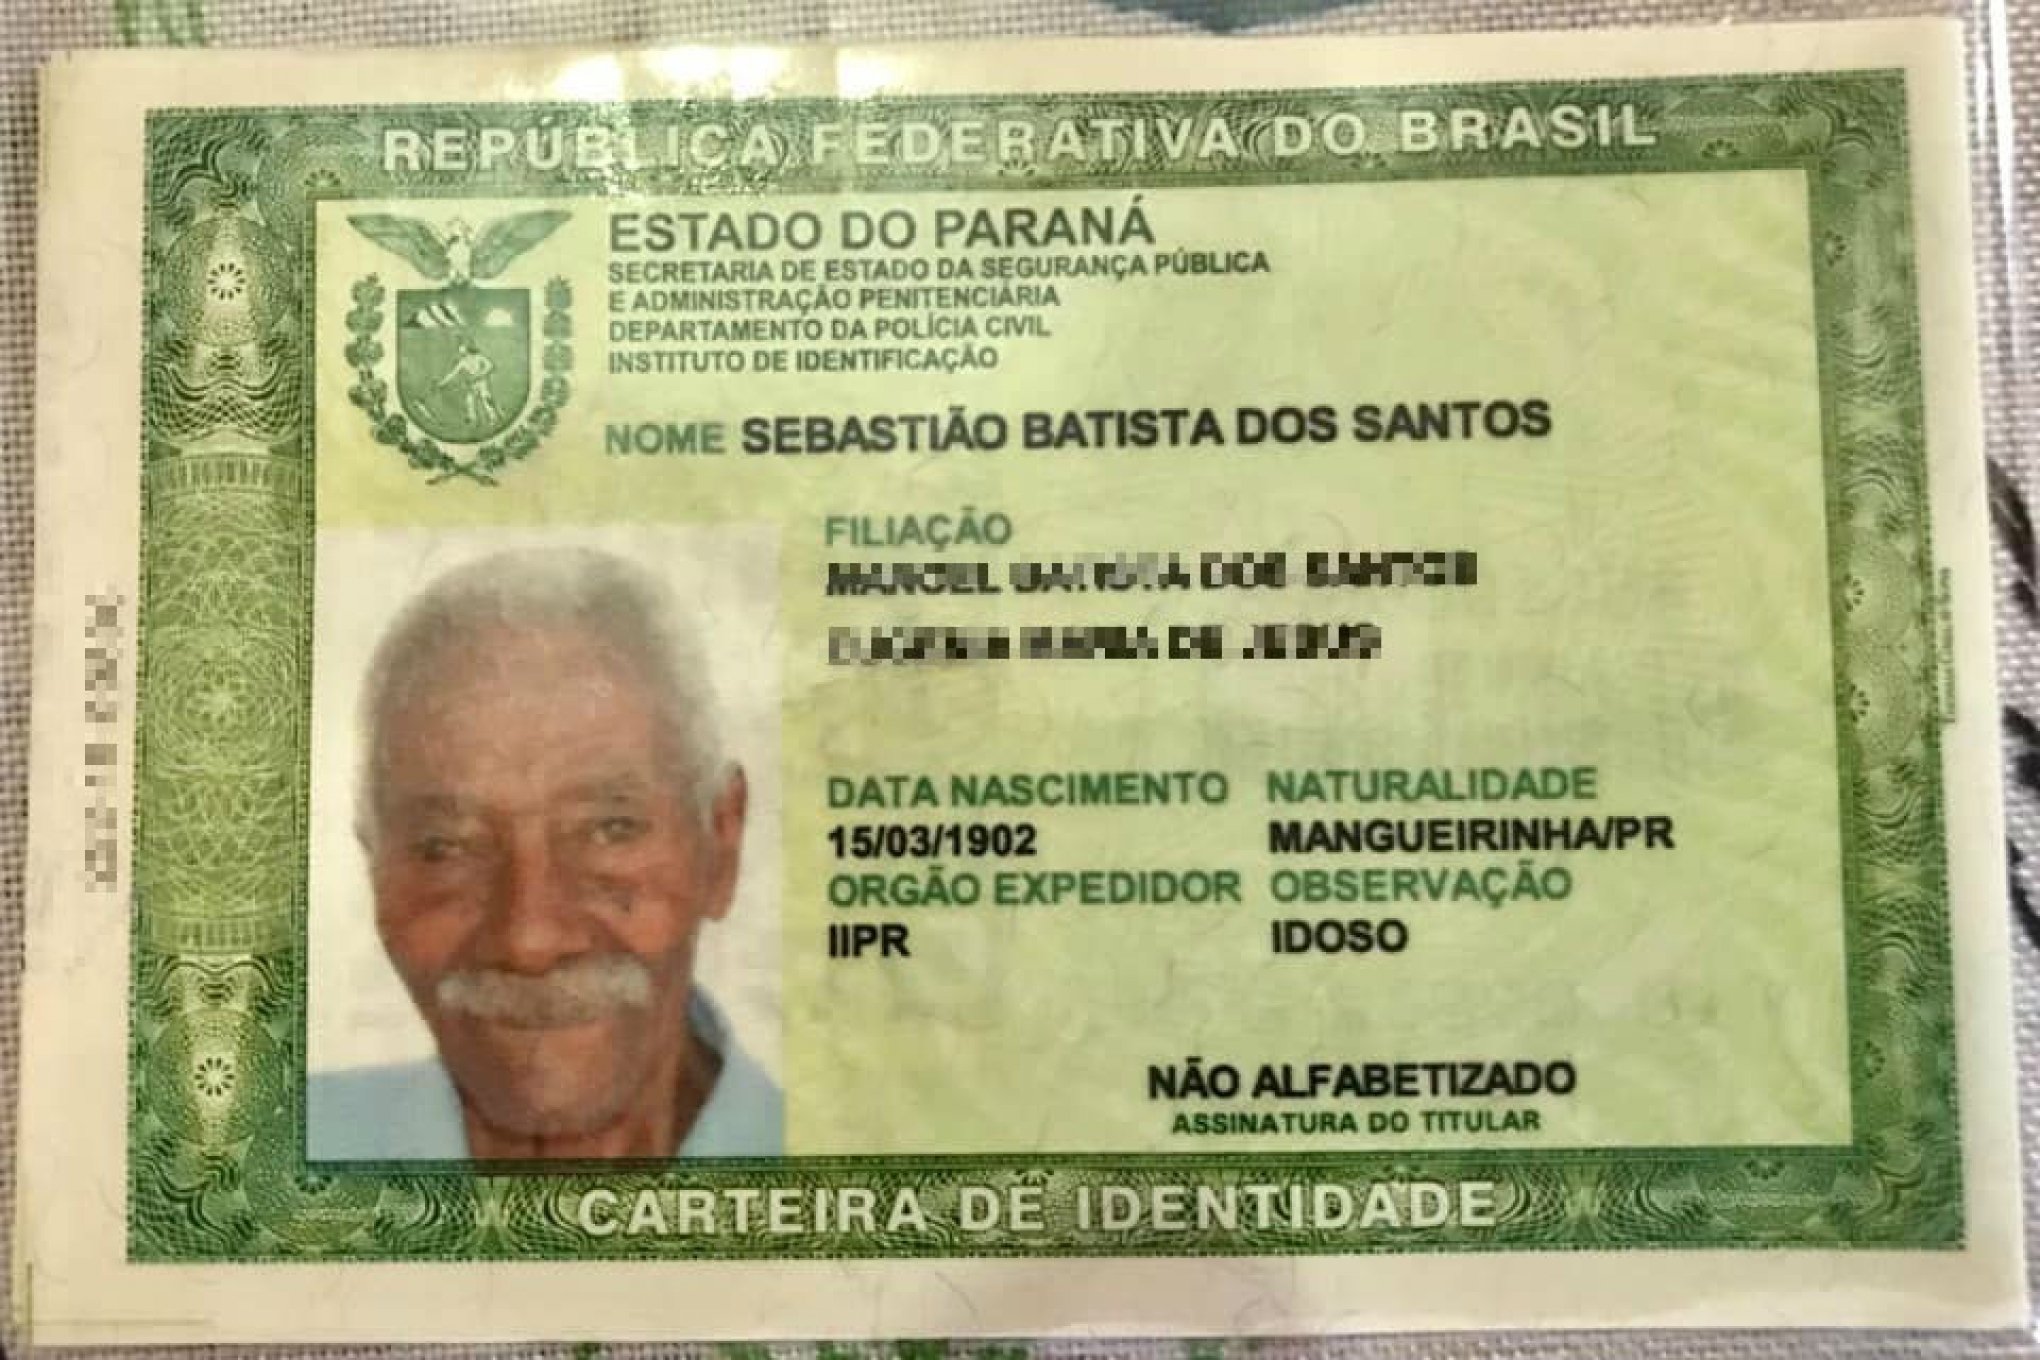 Morador do Paraná de 117 anos pode ser o homem mais velho do mundo - País -  Jornal NH